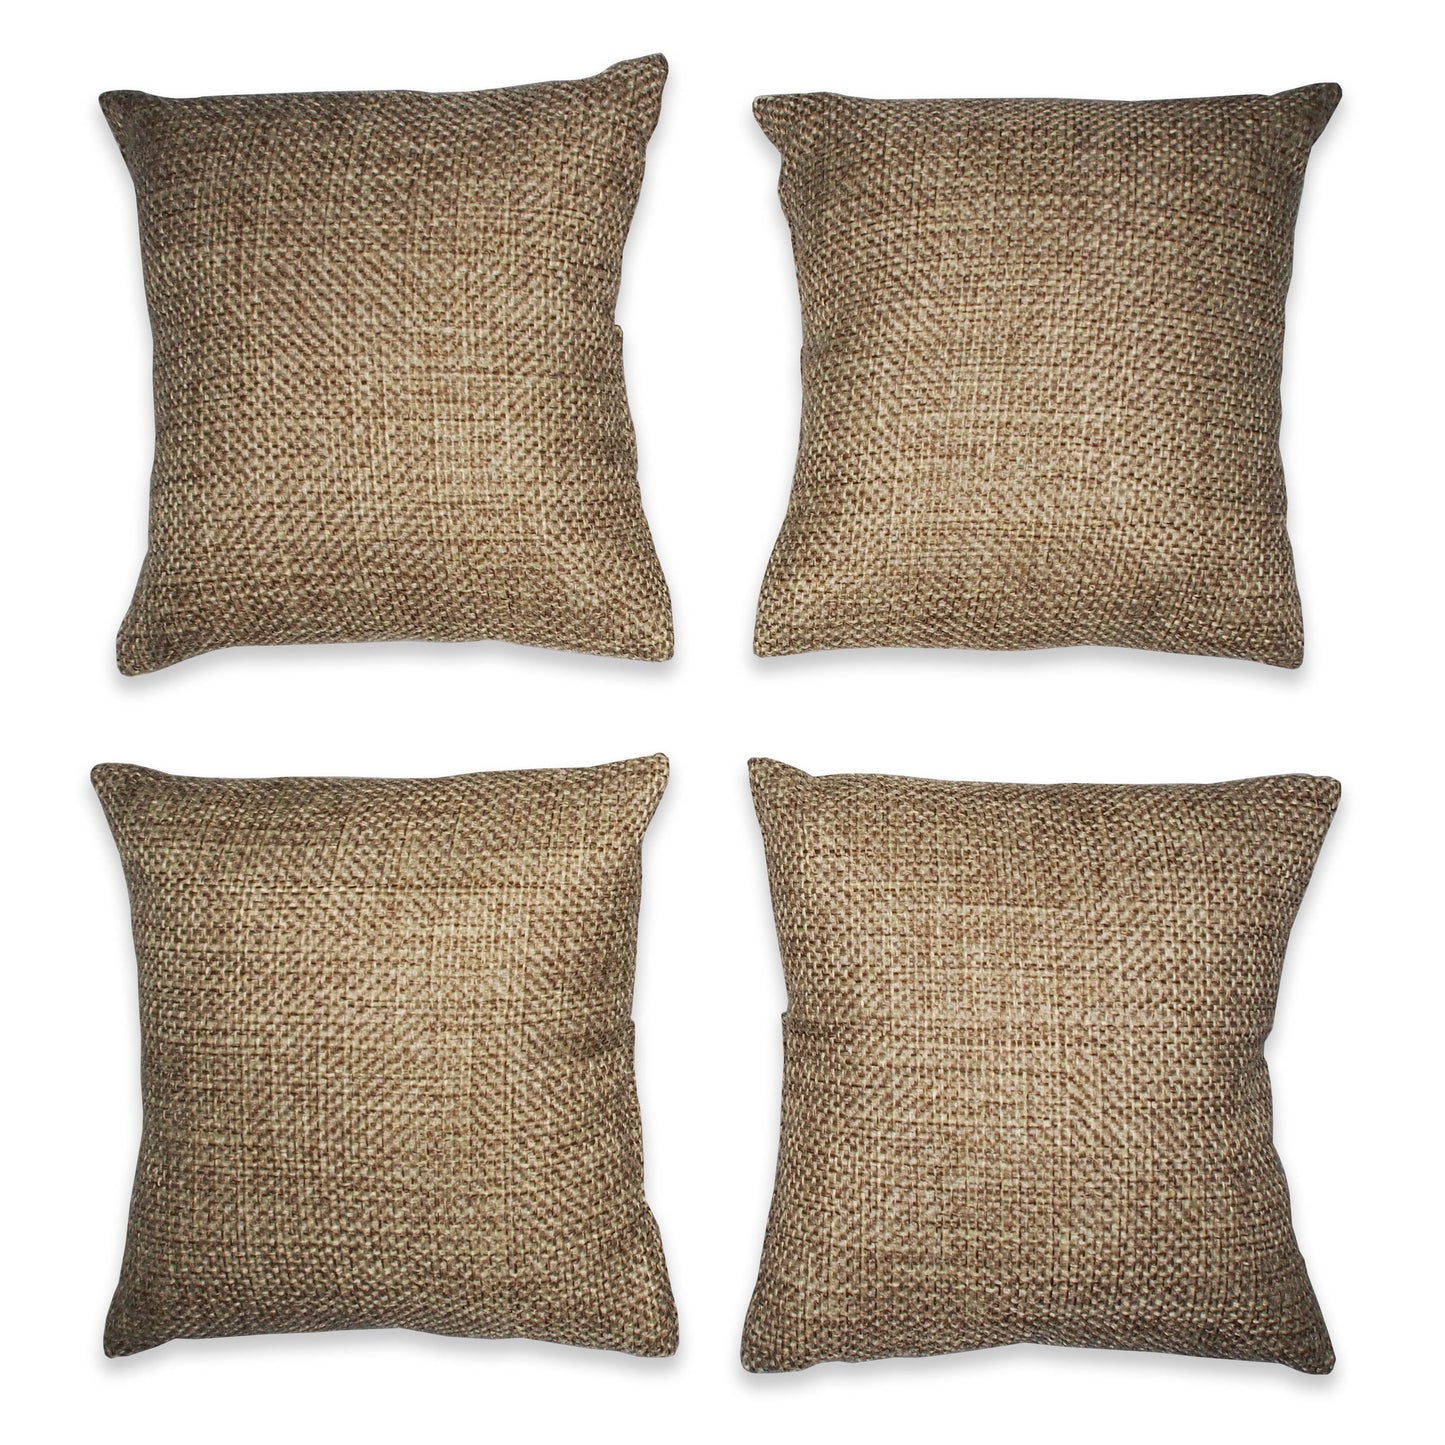 4" Burlap Fabric Pillow Displays